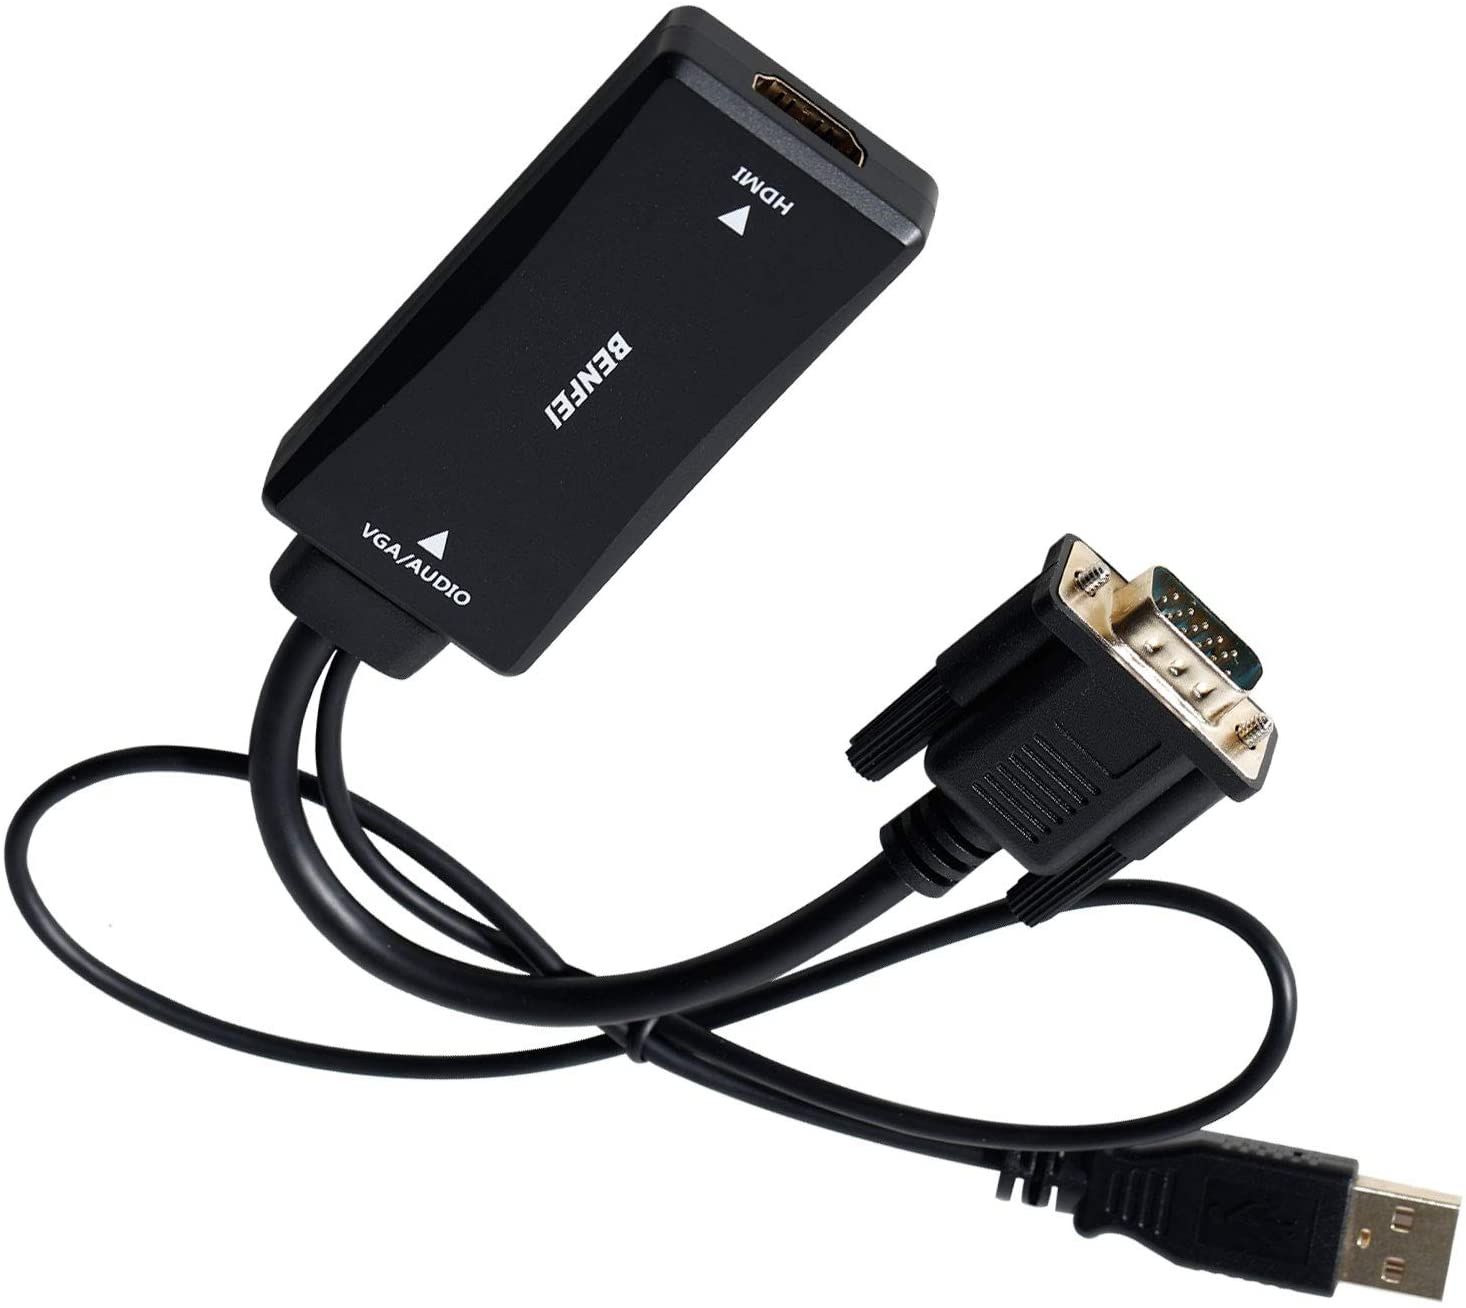 Benfei VGA to HDMI Adapter design